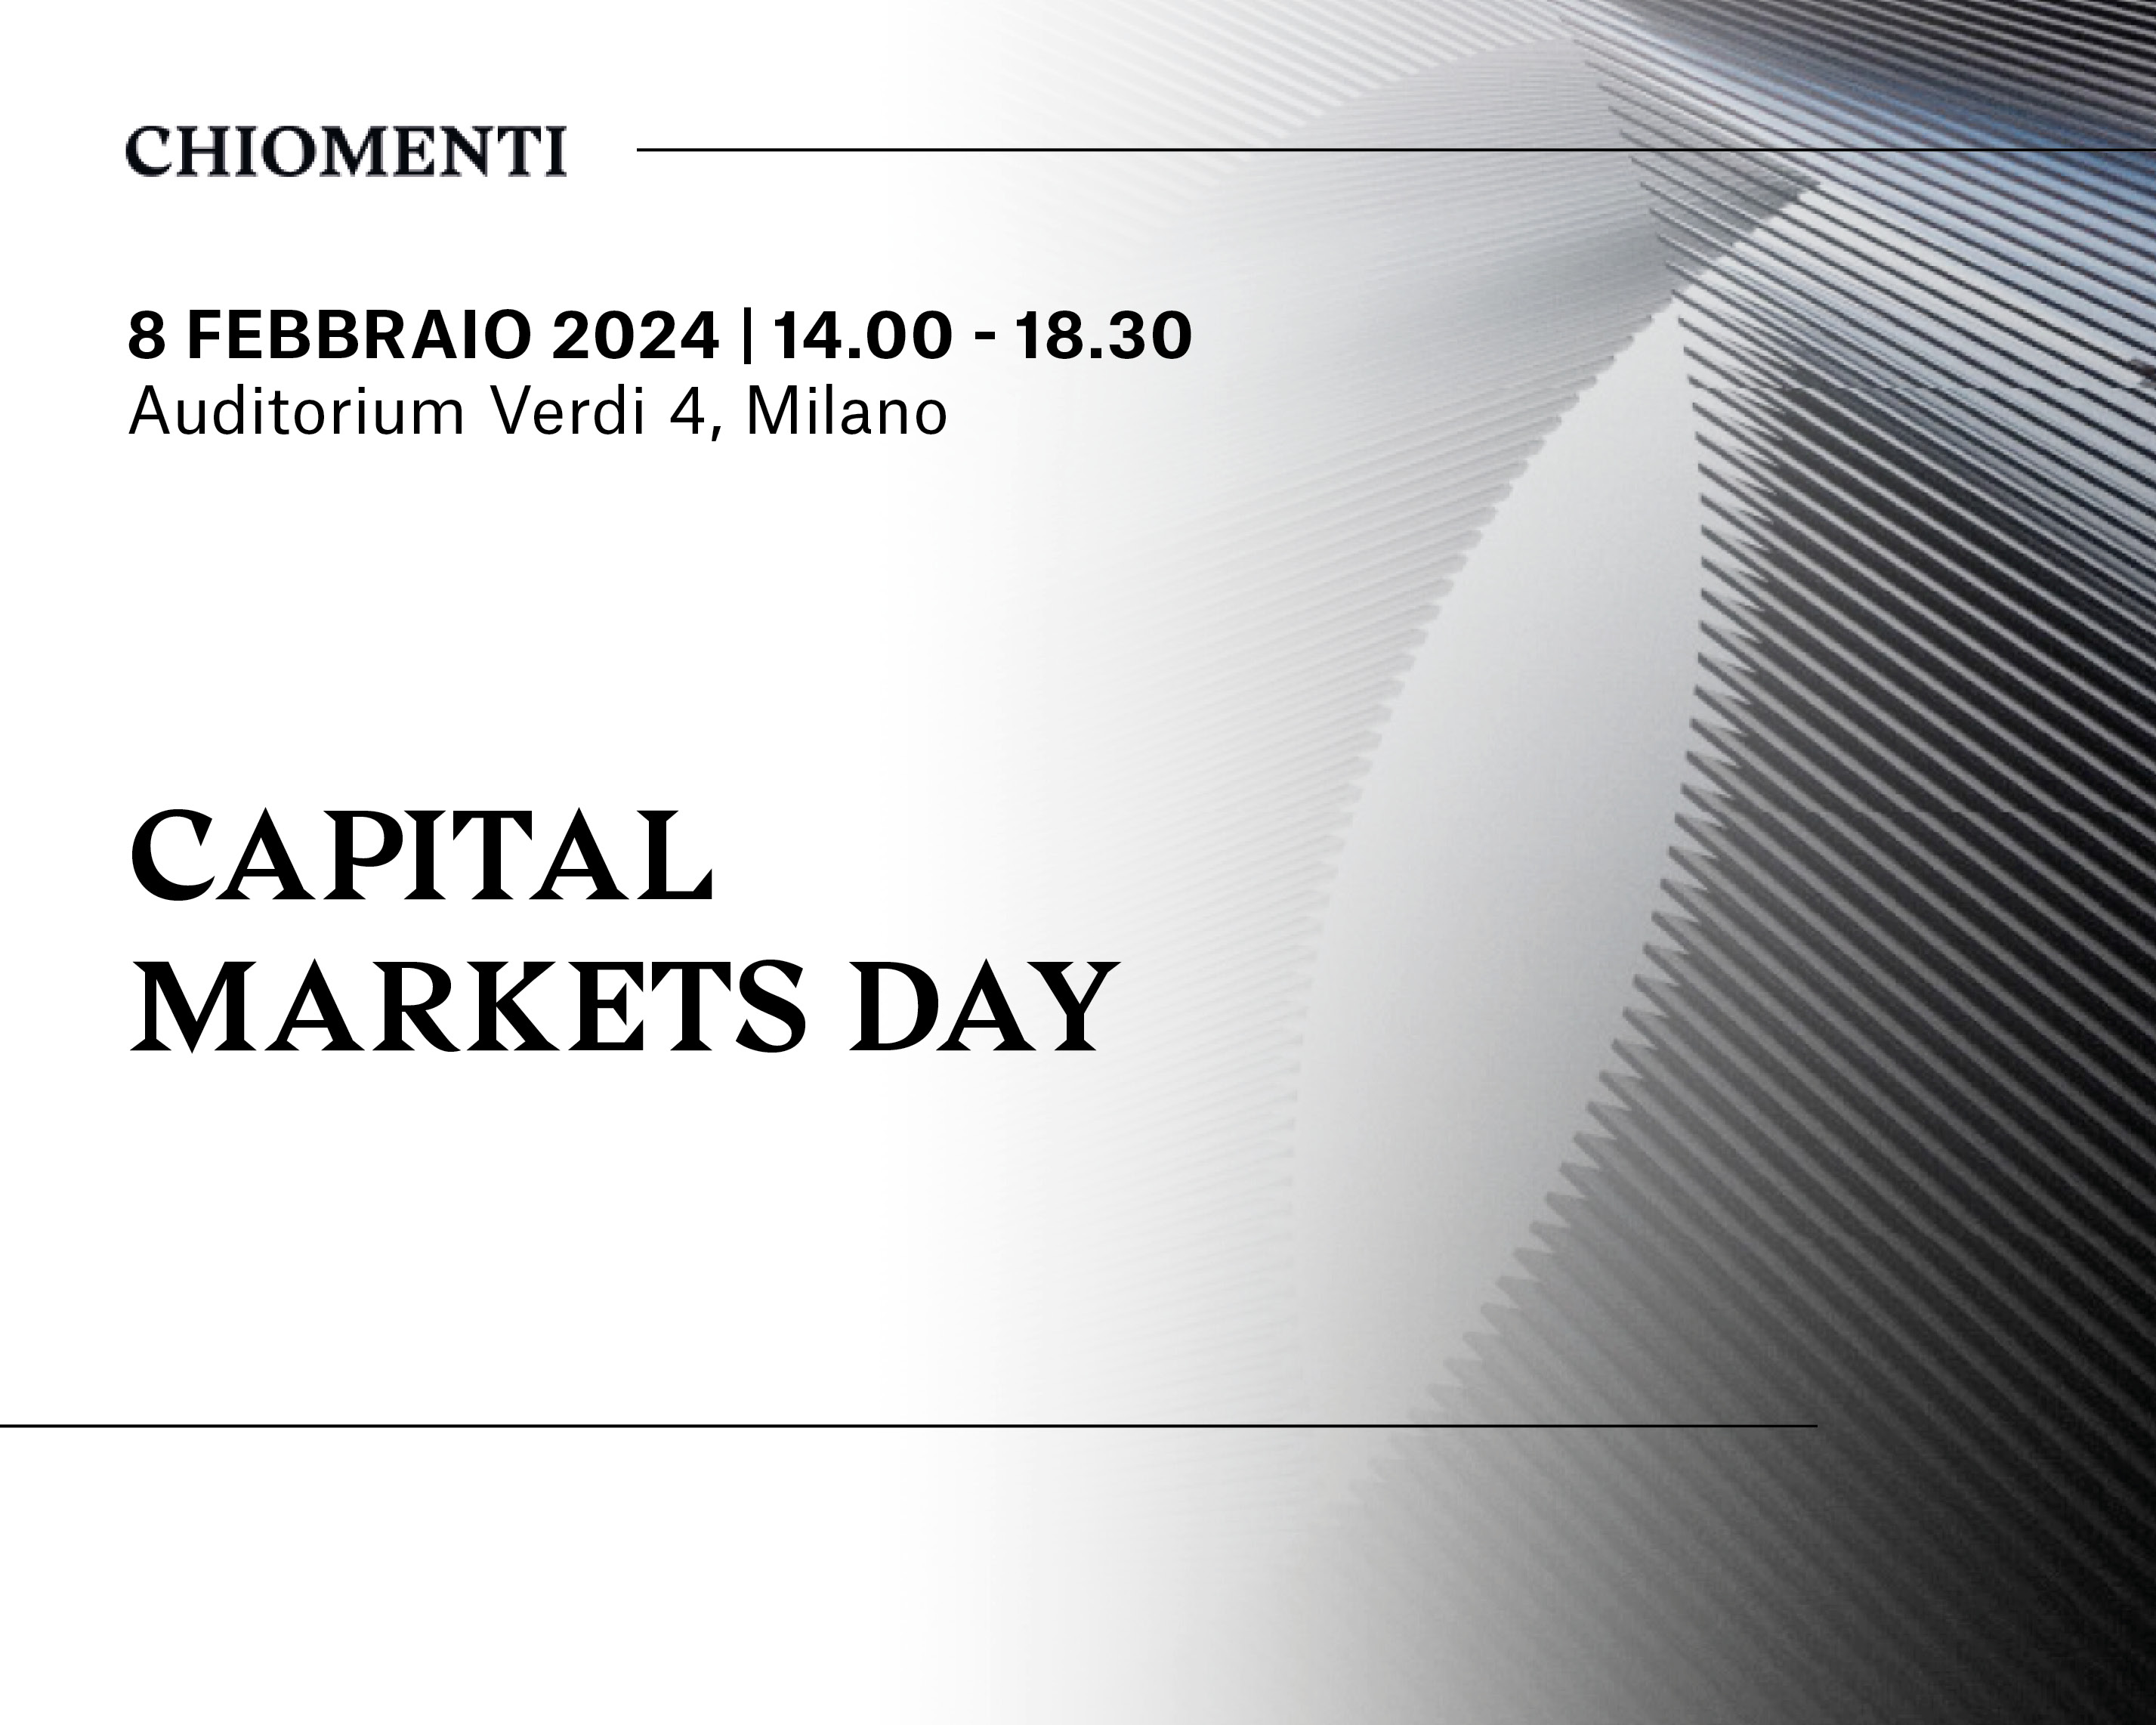 Capital Markets Day